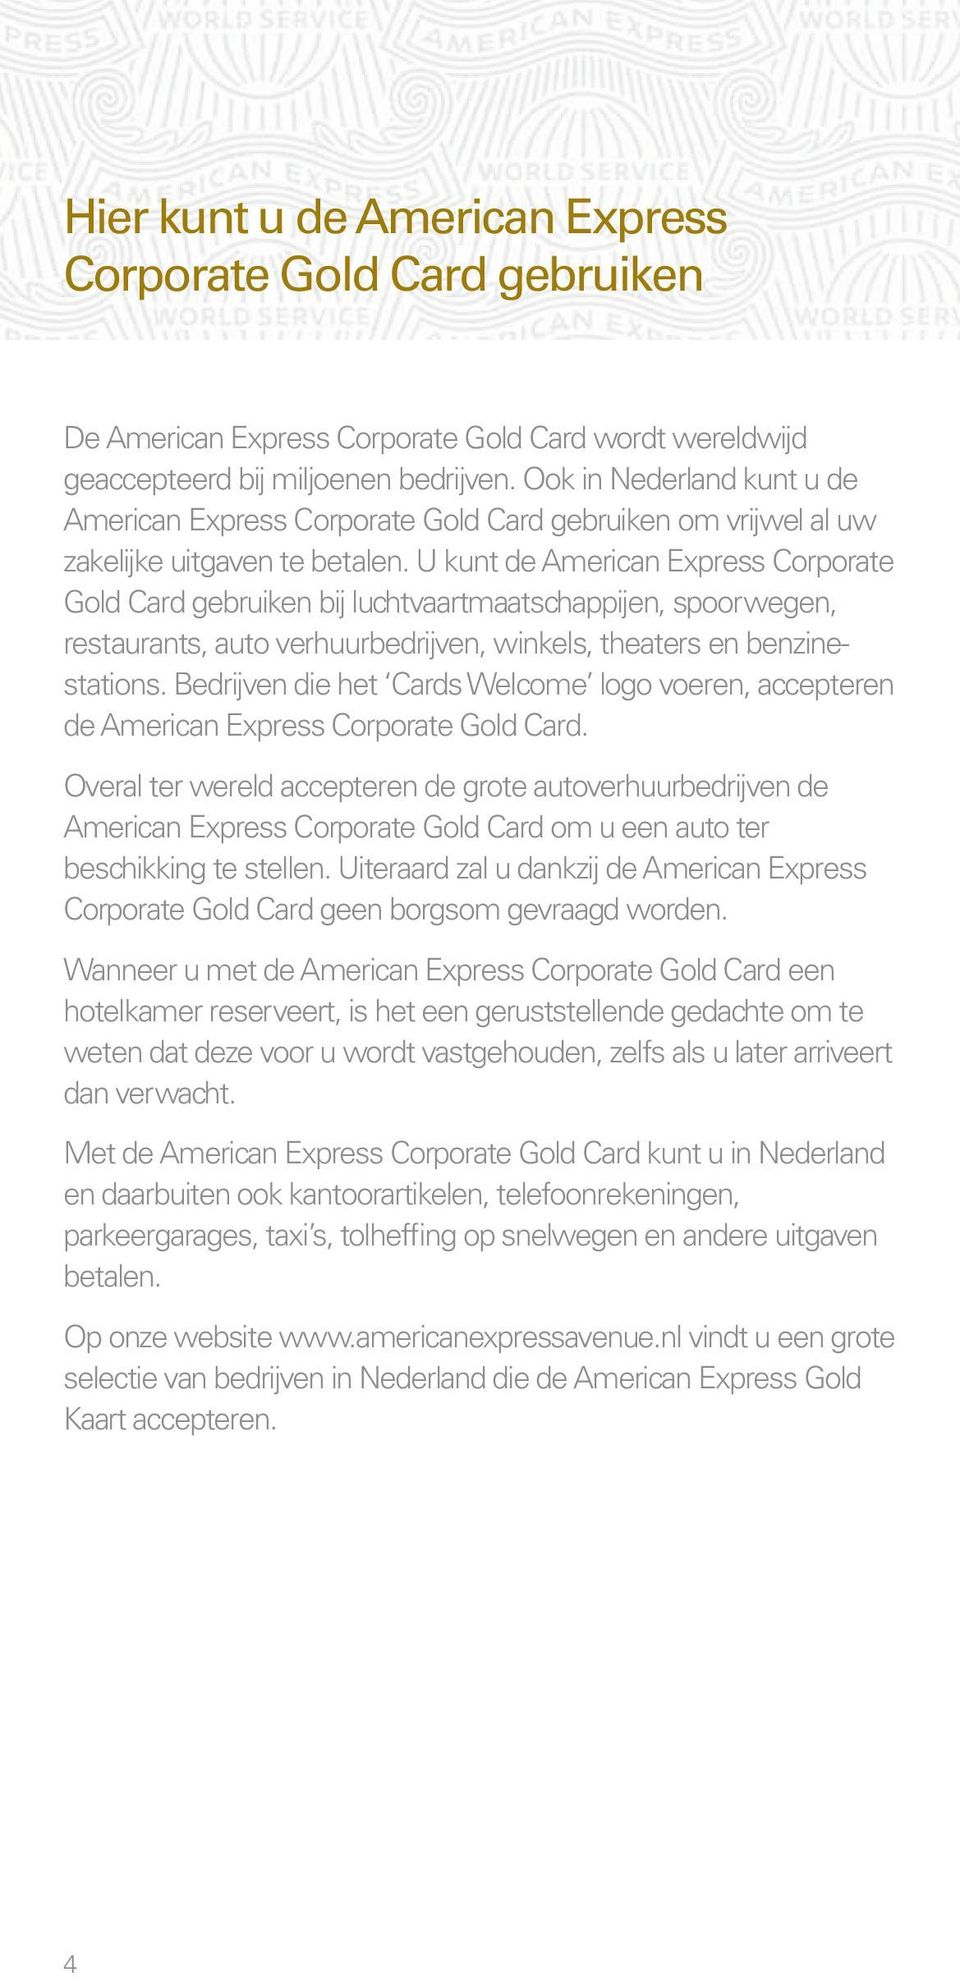 U kunt de American Express Corporate Gold Card gebruiken bij luchtvaartmaatschappijen, spoorwegen, restaurants, auto verhuurbedrijven, winkels, theaters en benzinestations.